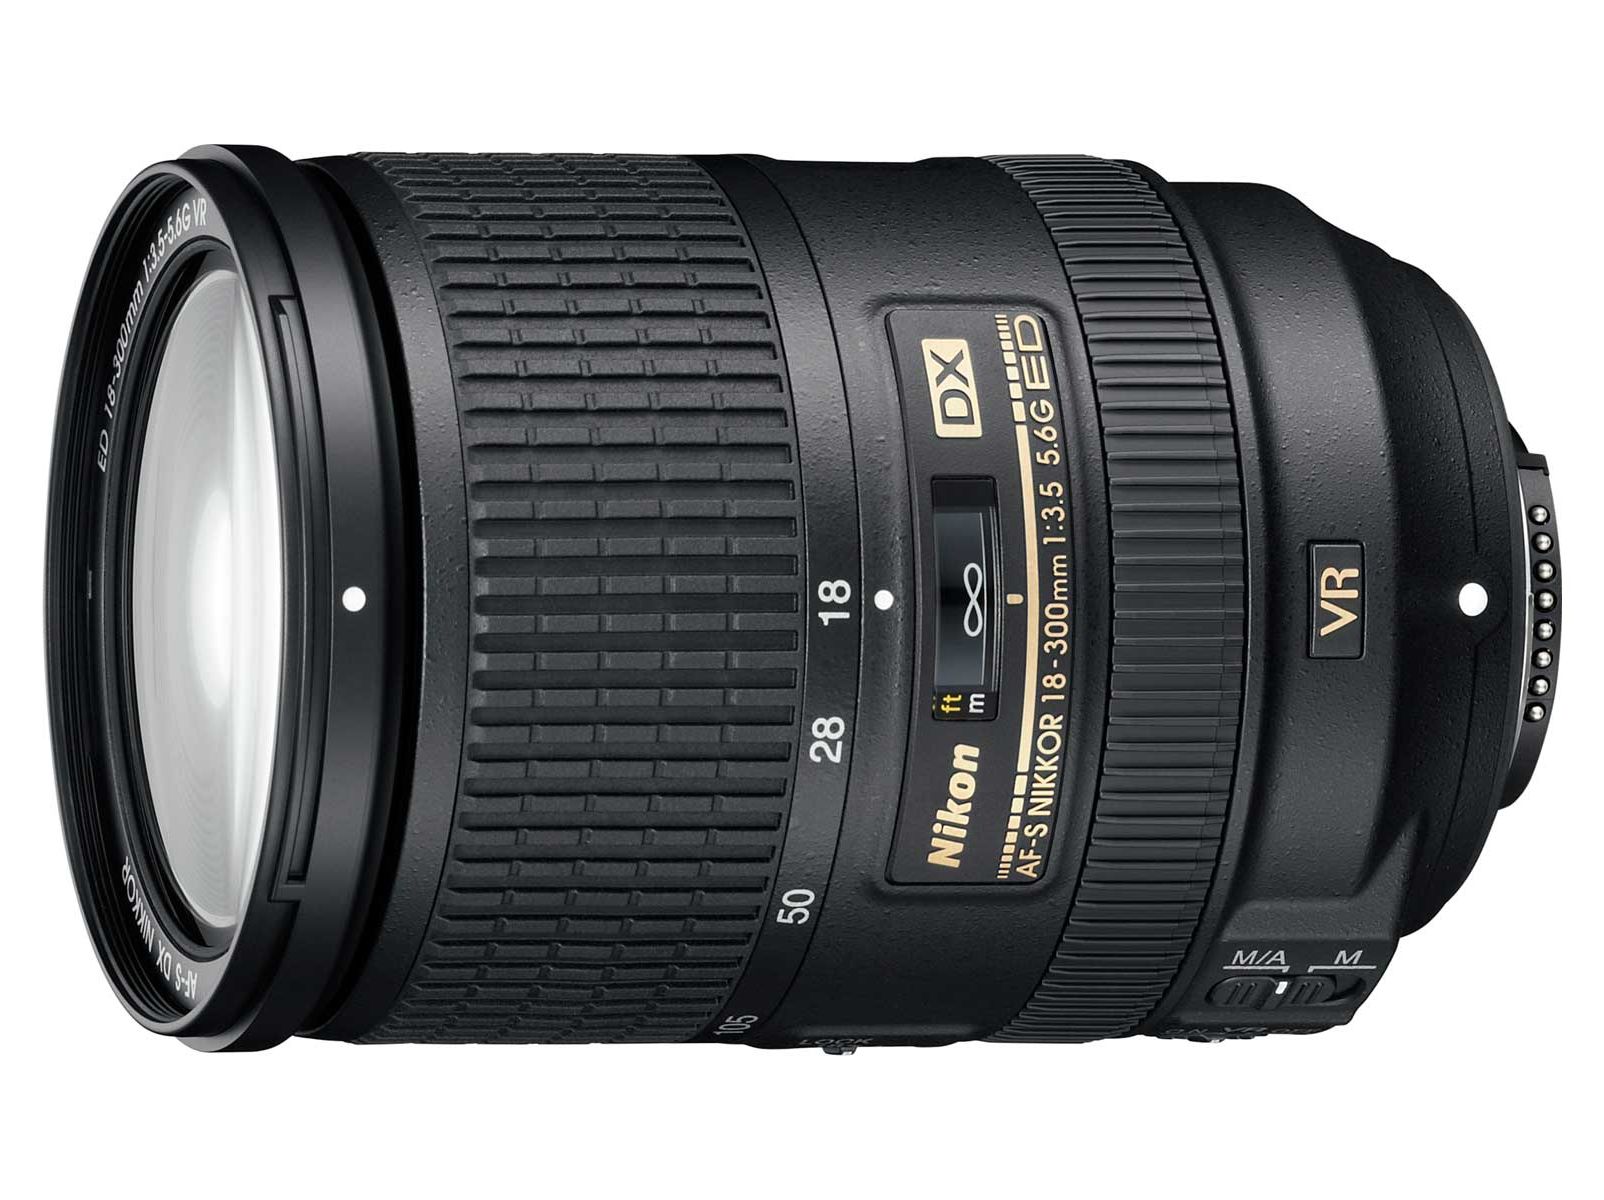 Ống kính Nikon AF-S DX NIKKOR 18-300mm f/3.5-5.6G ED Vibration Reduction Zoom Lens with Auto Focus for Nikon DSLR Cameras